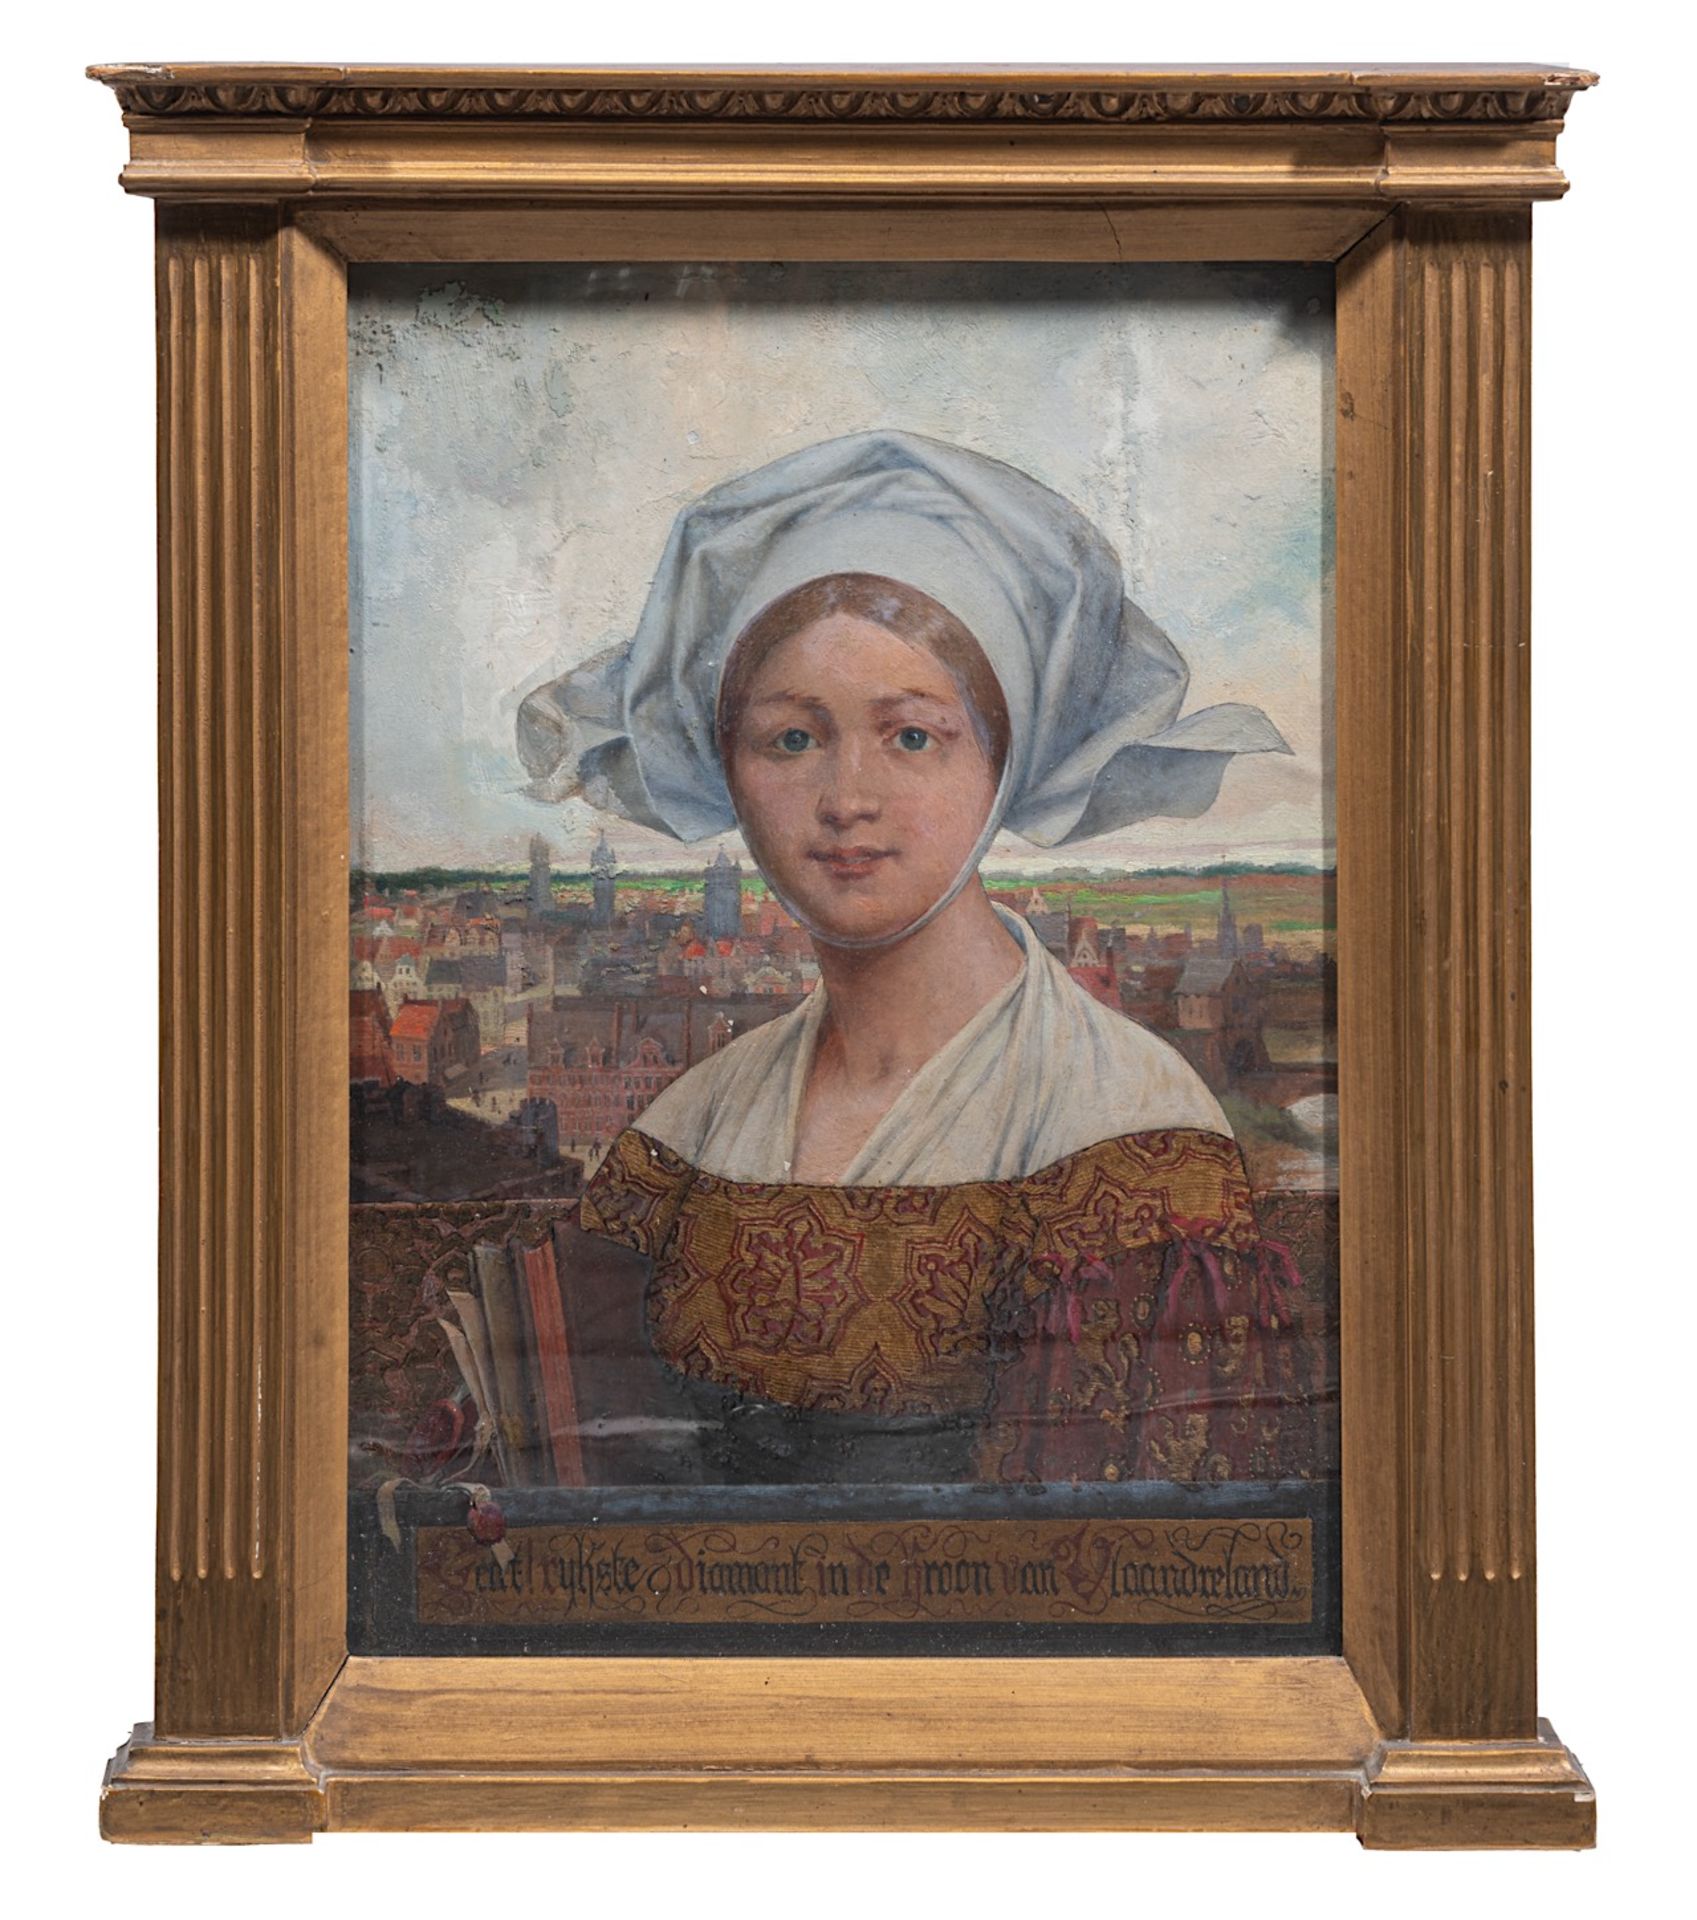 Theophile Marie Francoise Lybaert (1848-1927), 'Gent, Rijkste Diamant in de kroon van Vlaanderen', c - Bild 2 aus 7